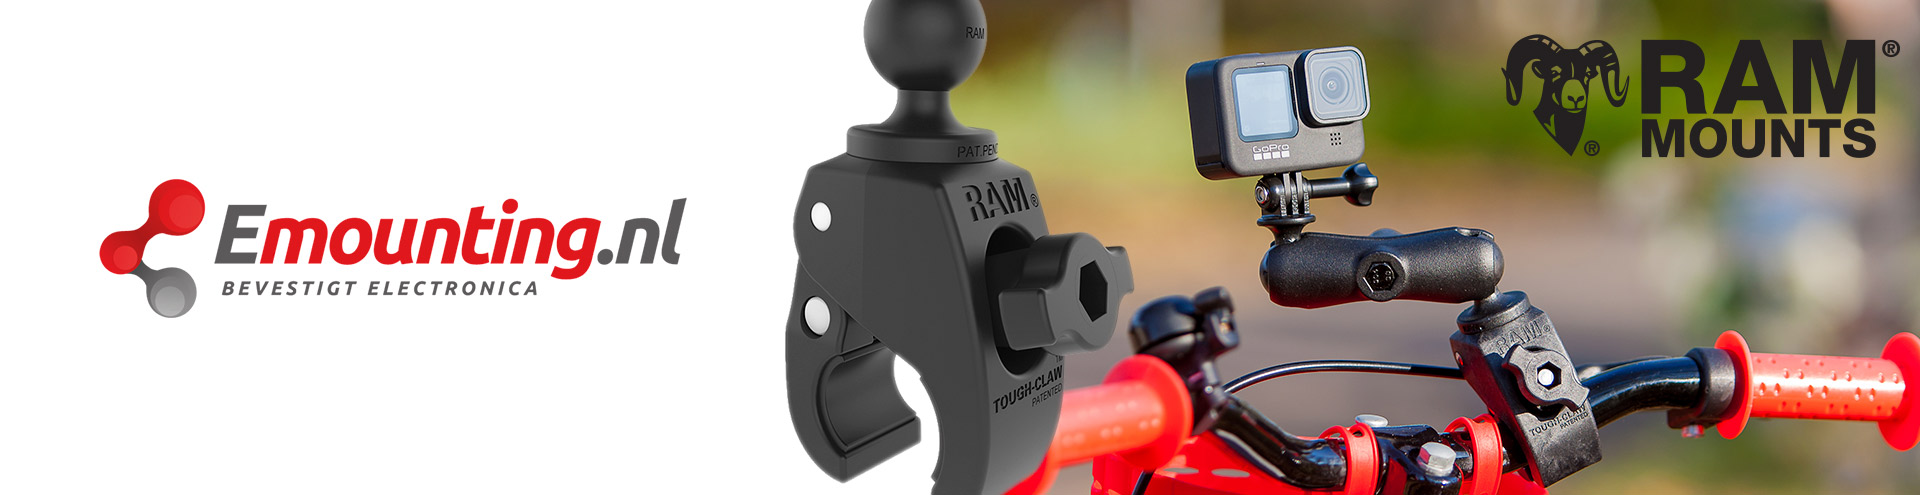 RAM Mount Tough-Claw GoPro set